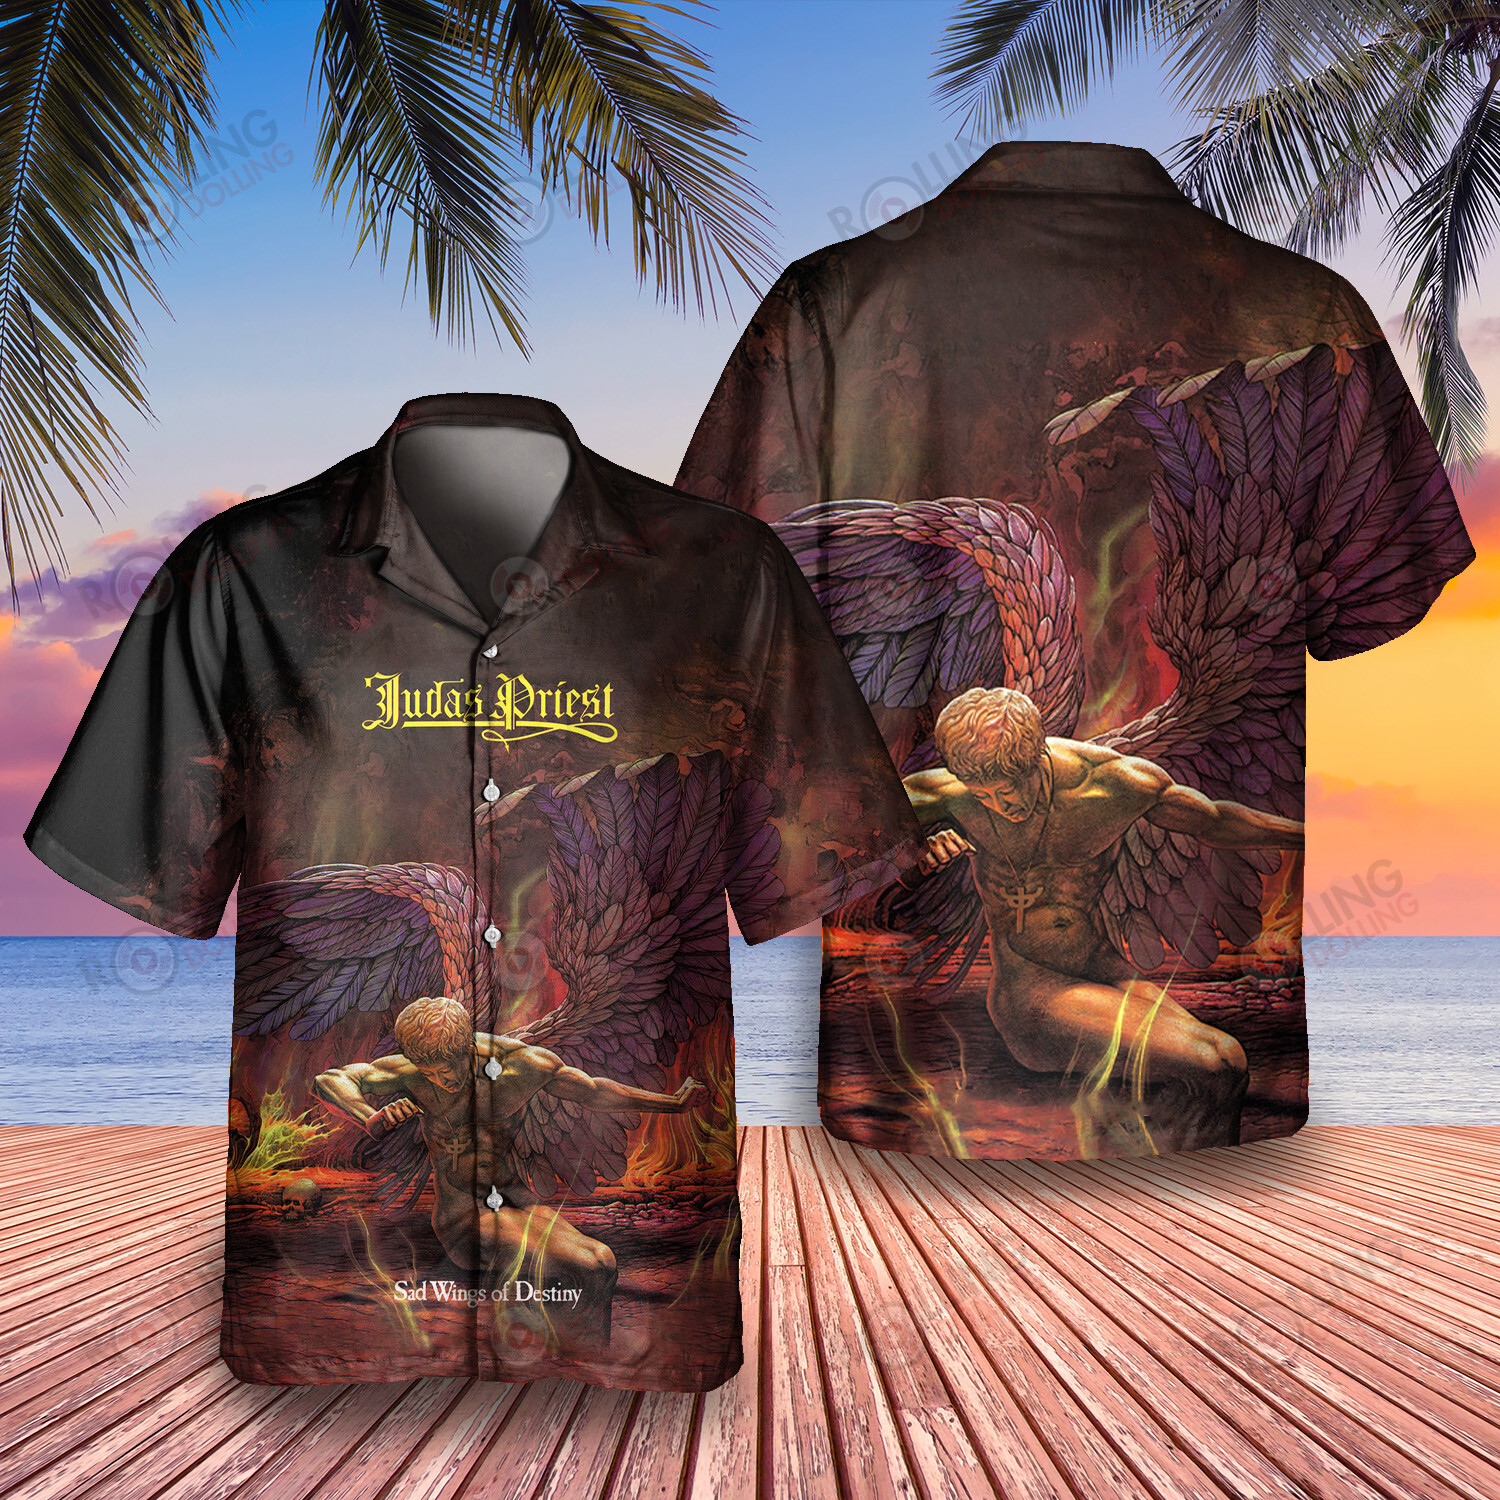 HOT Judas Priest Sad Wings of Destiny Album Tropical Shirt2